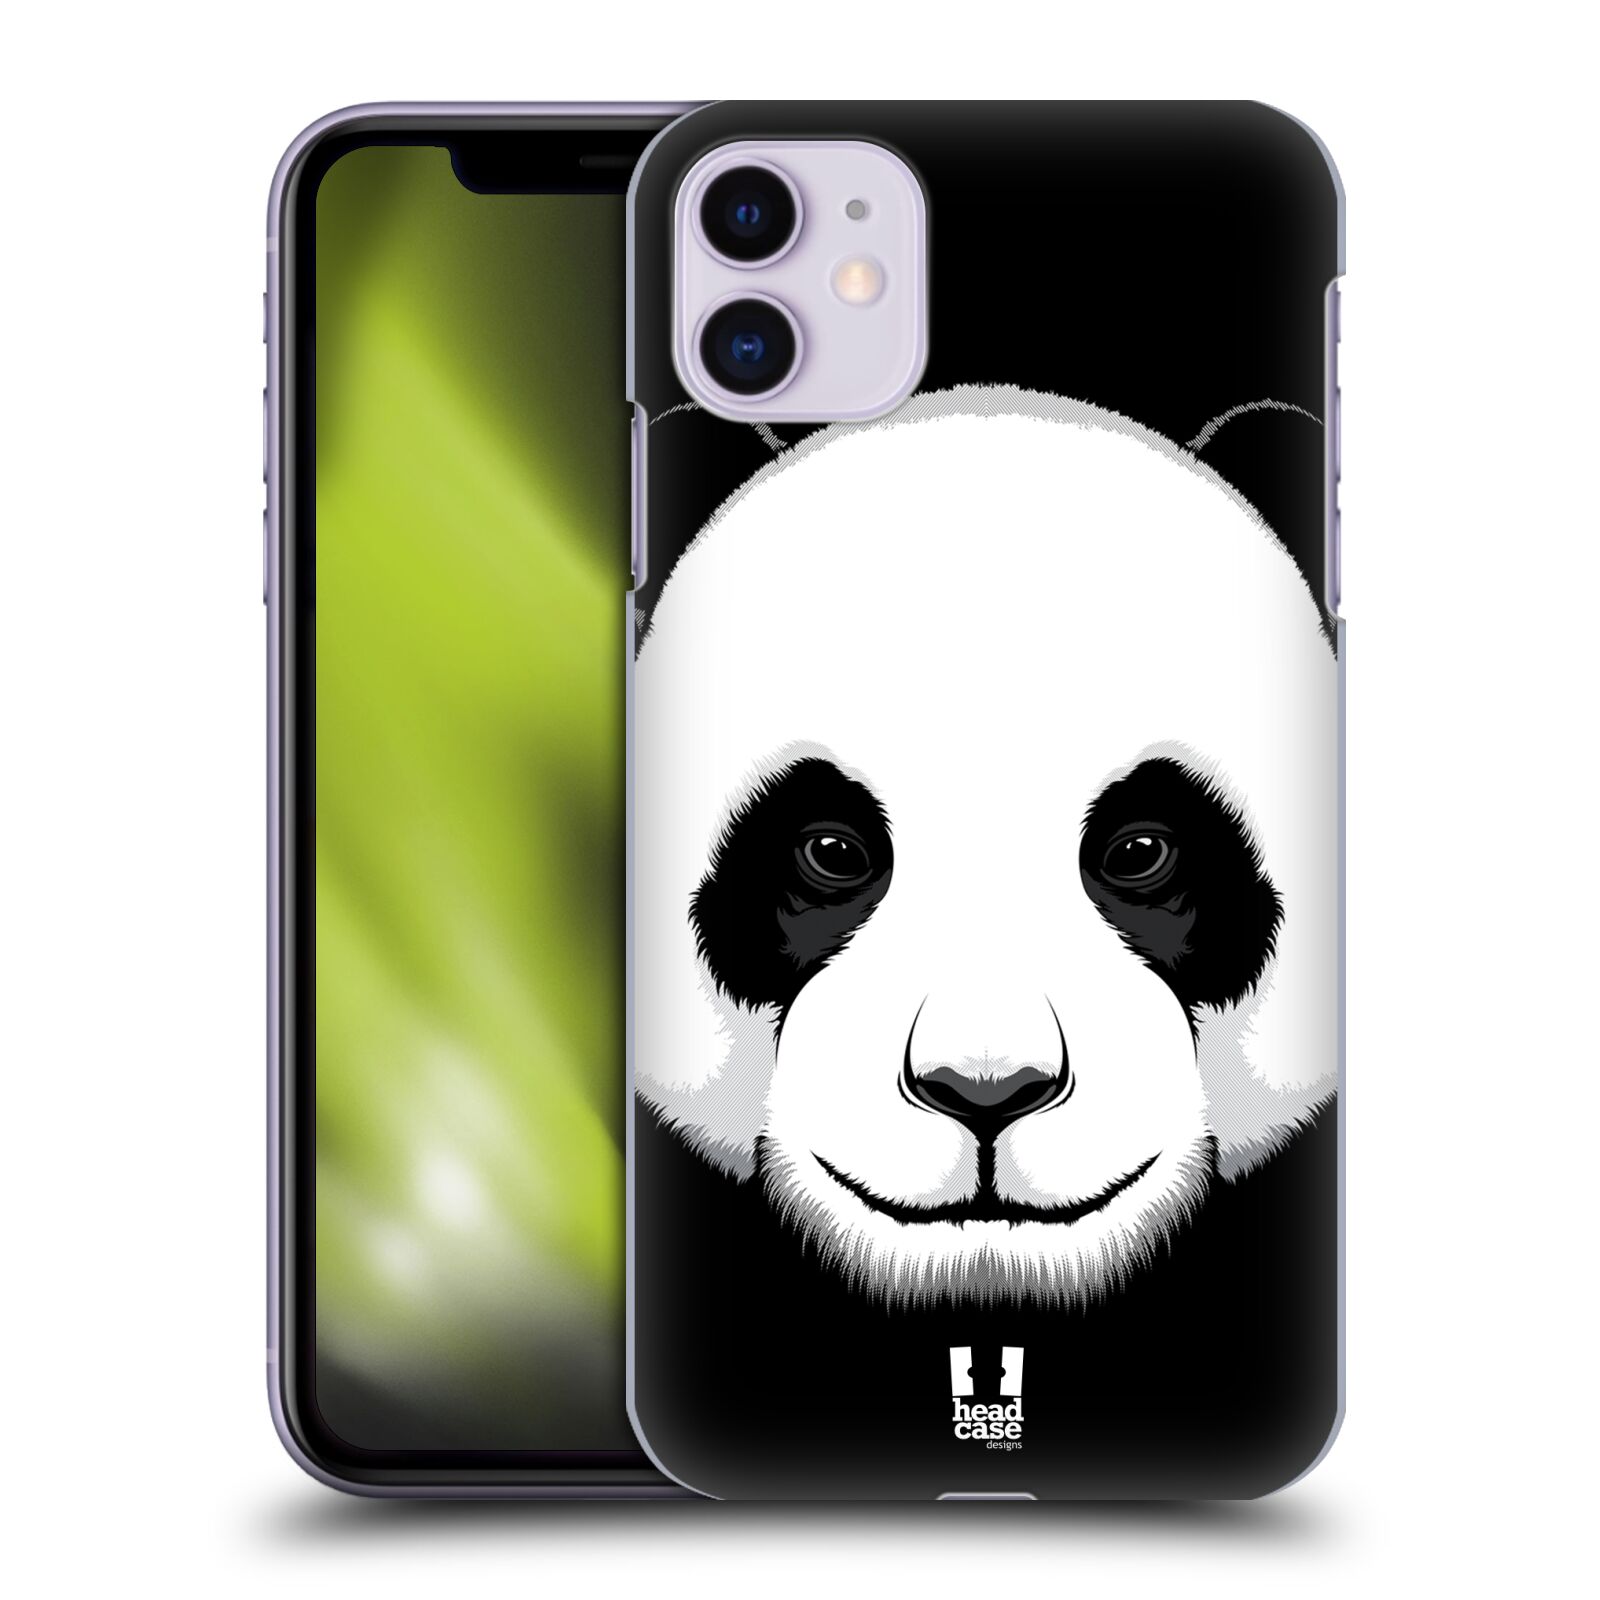 Pouzdro na mobil Apple Iphone 11 - HEAD CASE - vzor Zvíře kreslená tvář panda